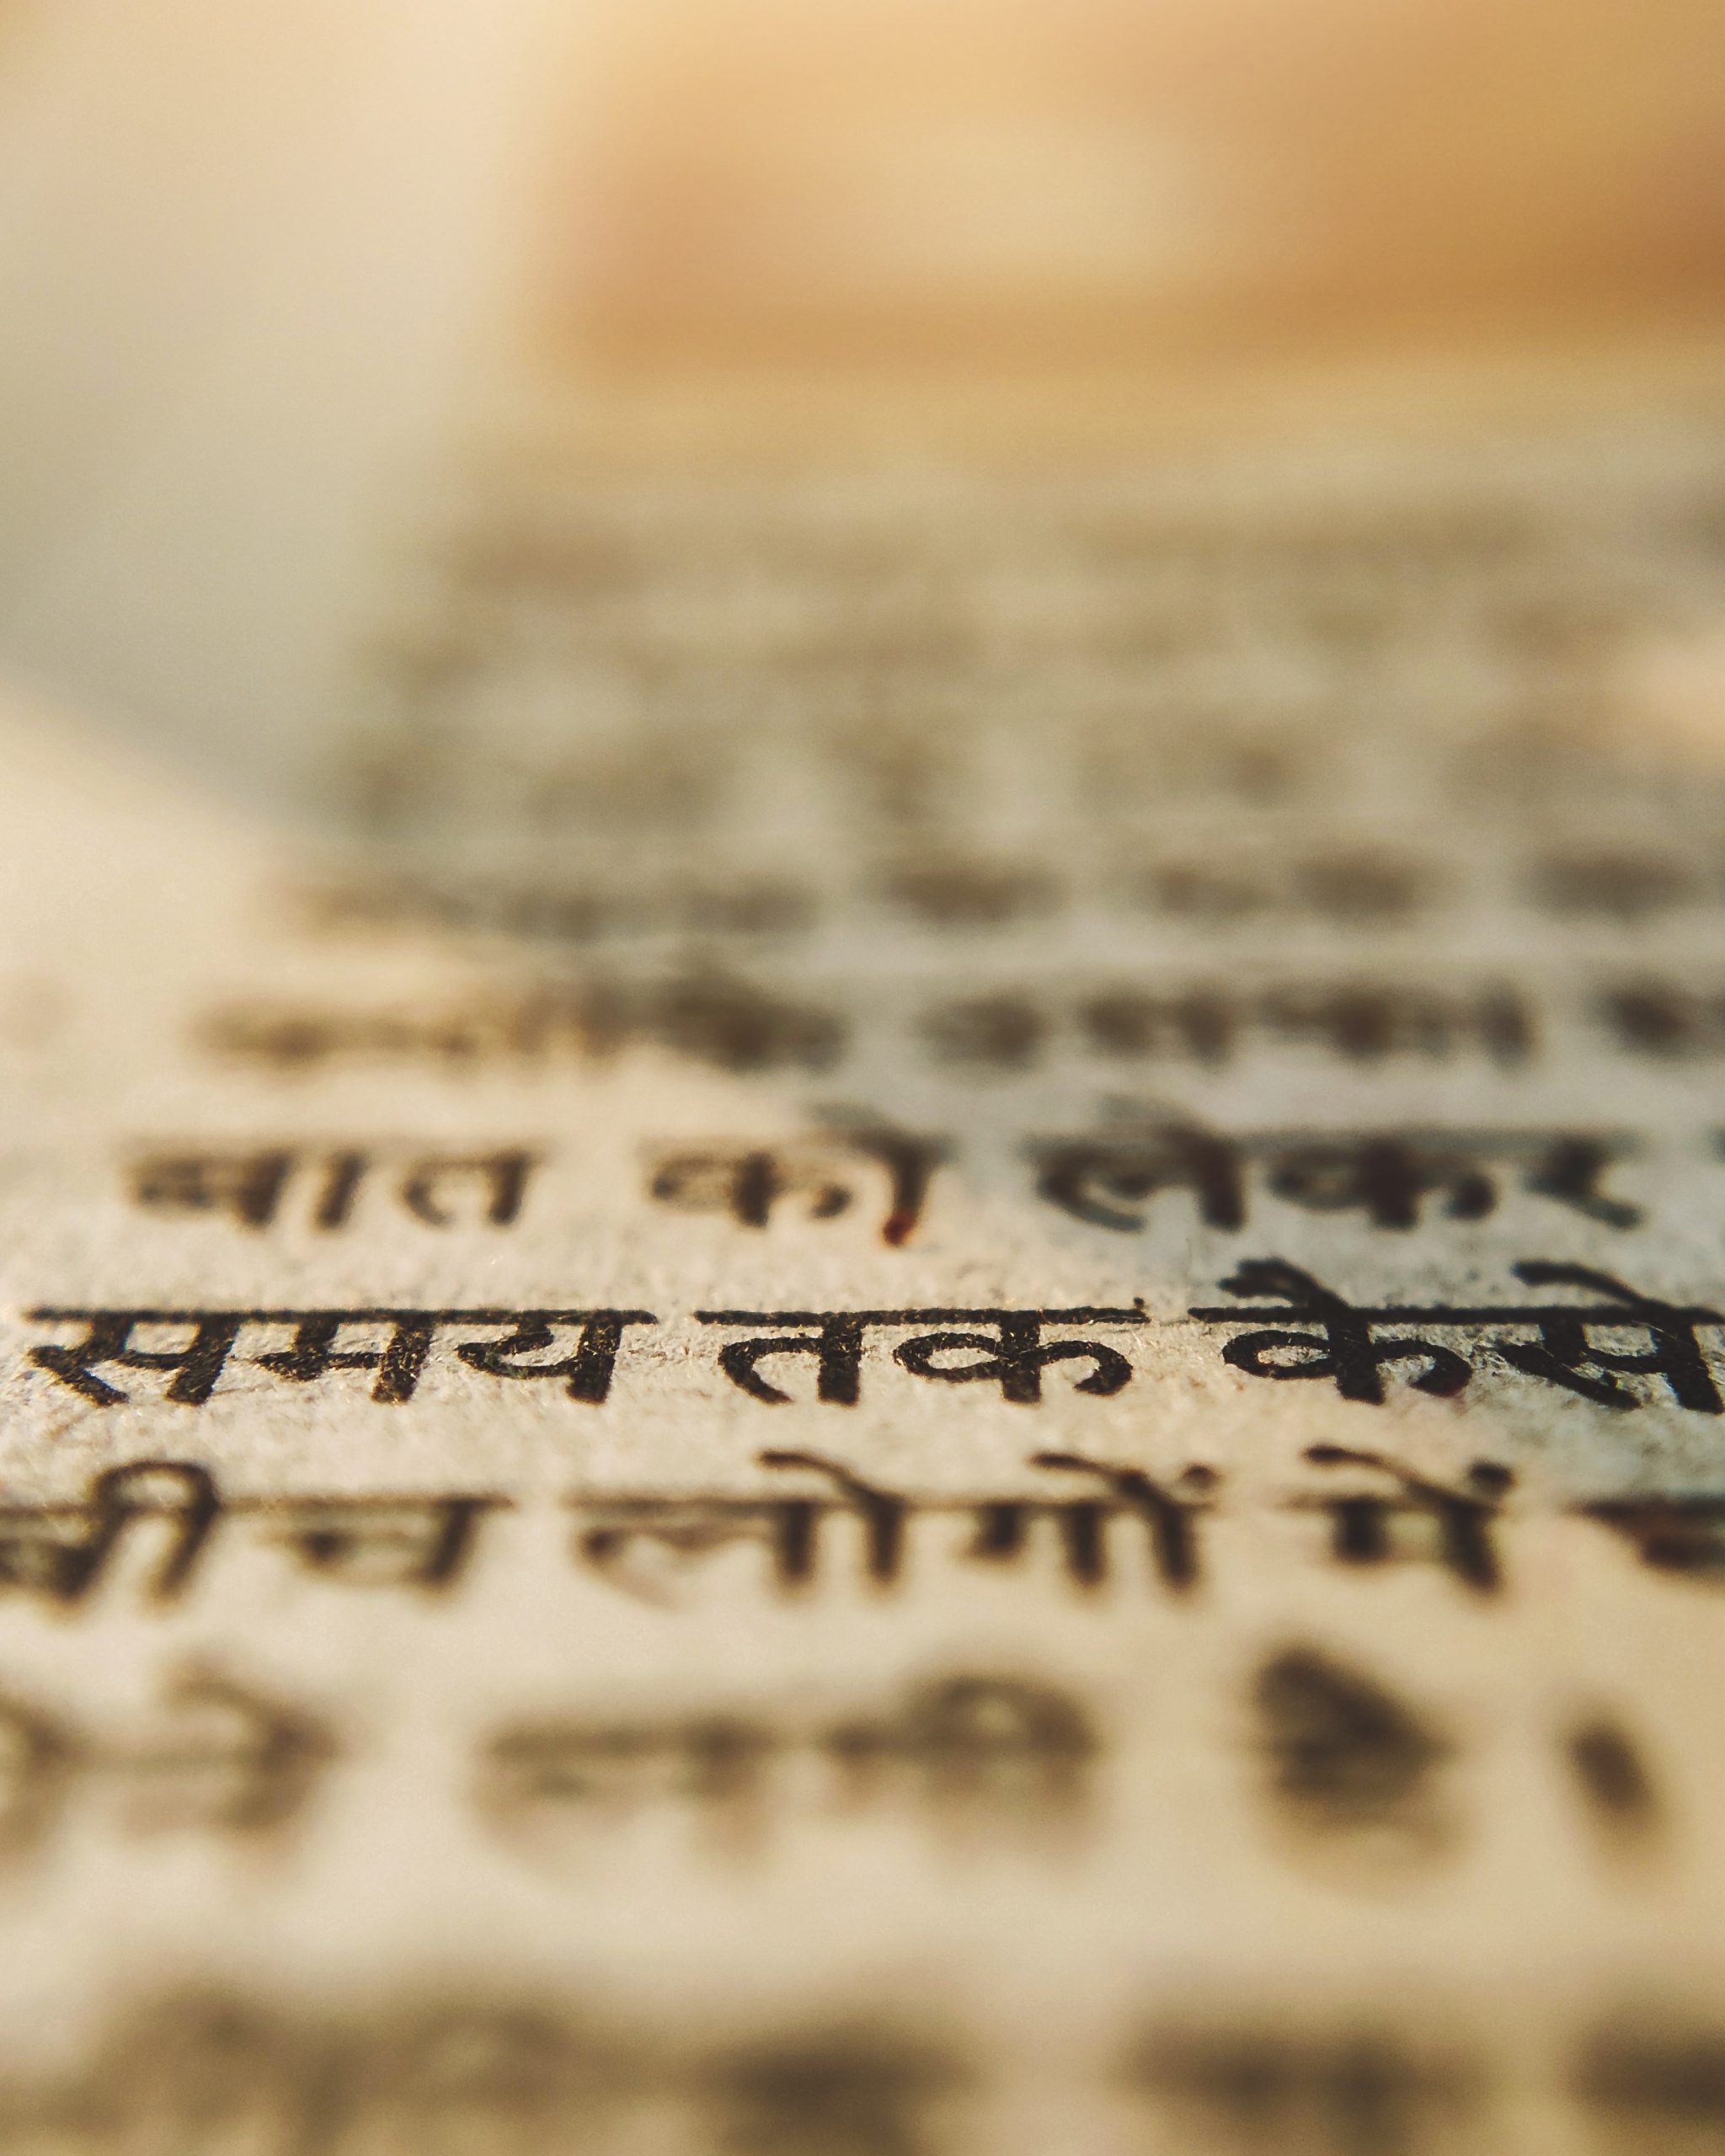 Hindi text written on paper